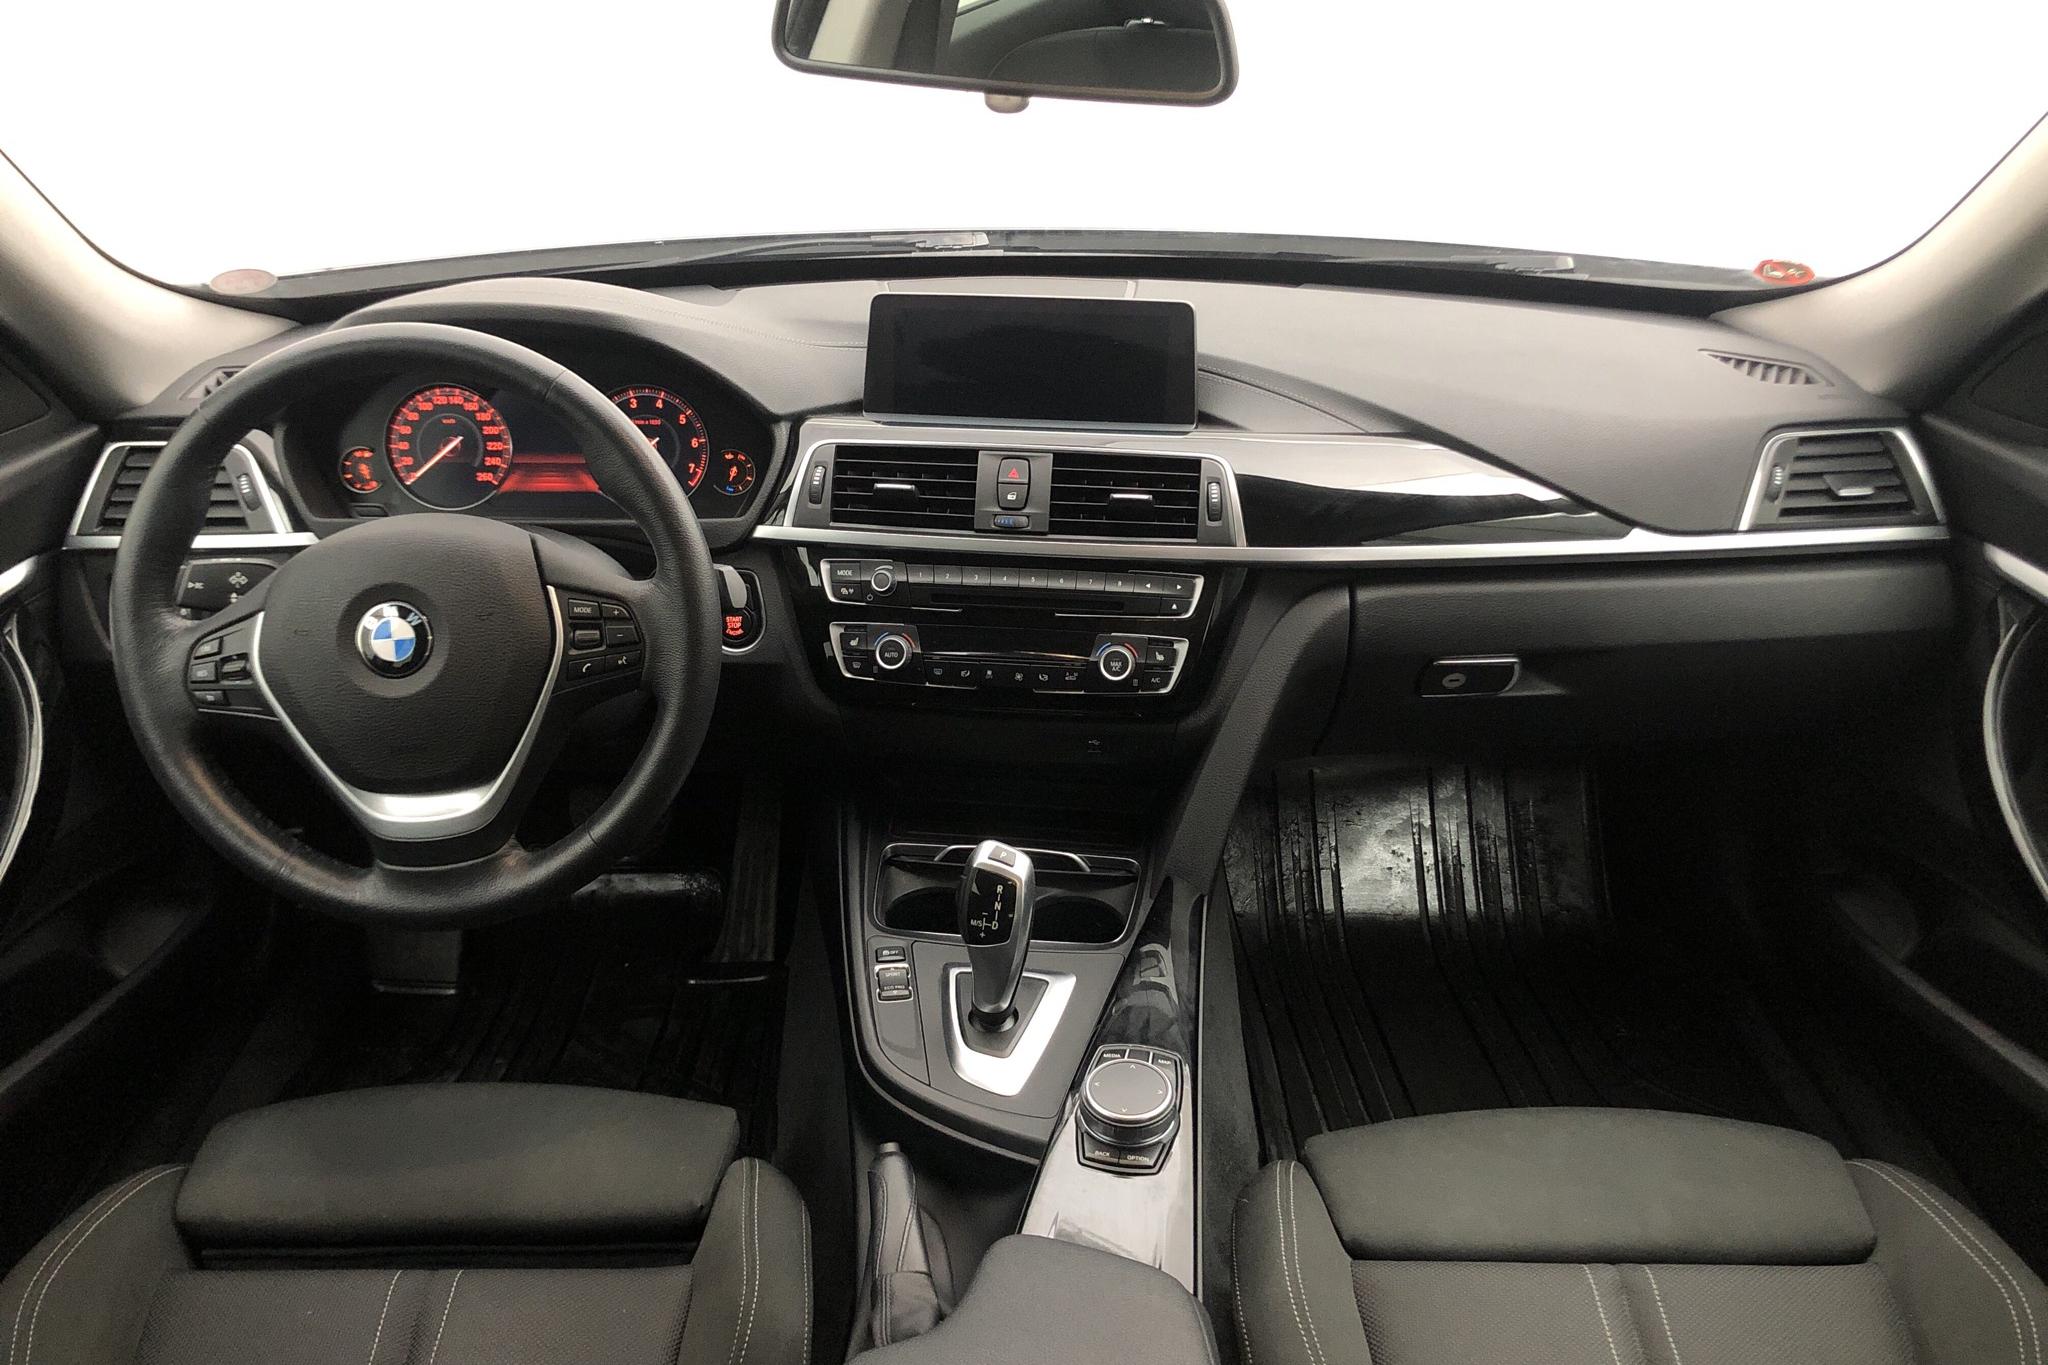 BMW 320i GT, F34 (184hk) - 83 950 km - Automatic - gray - 2019